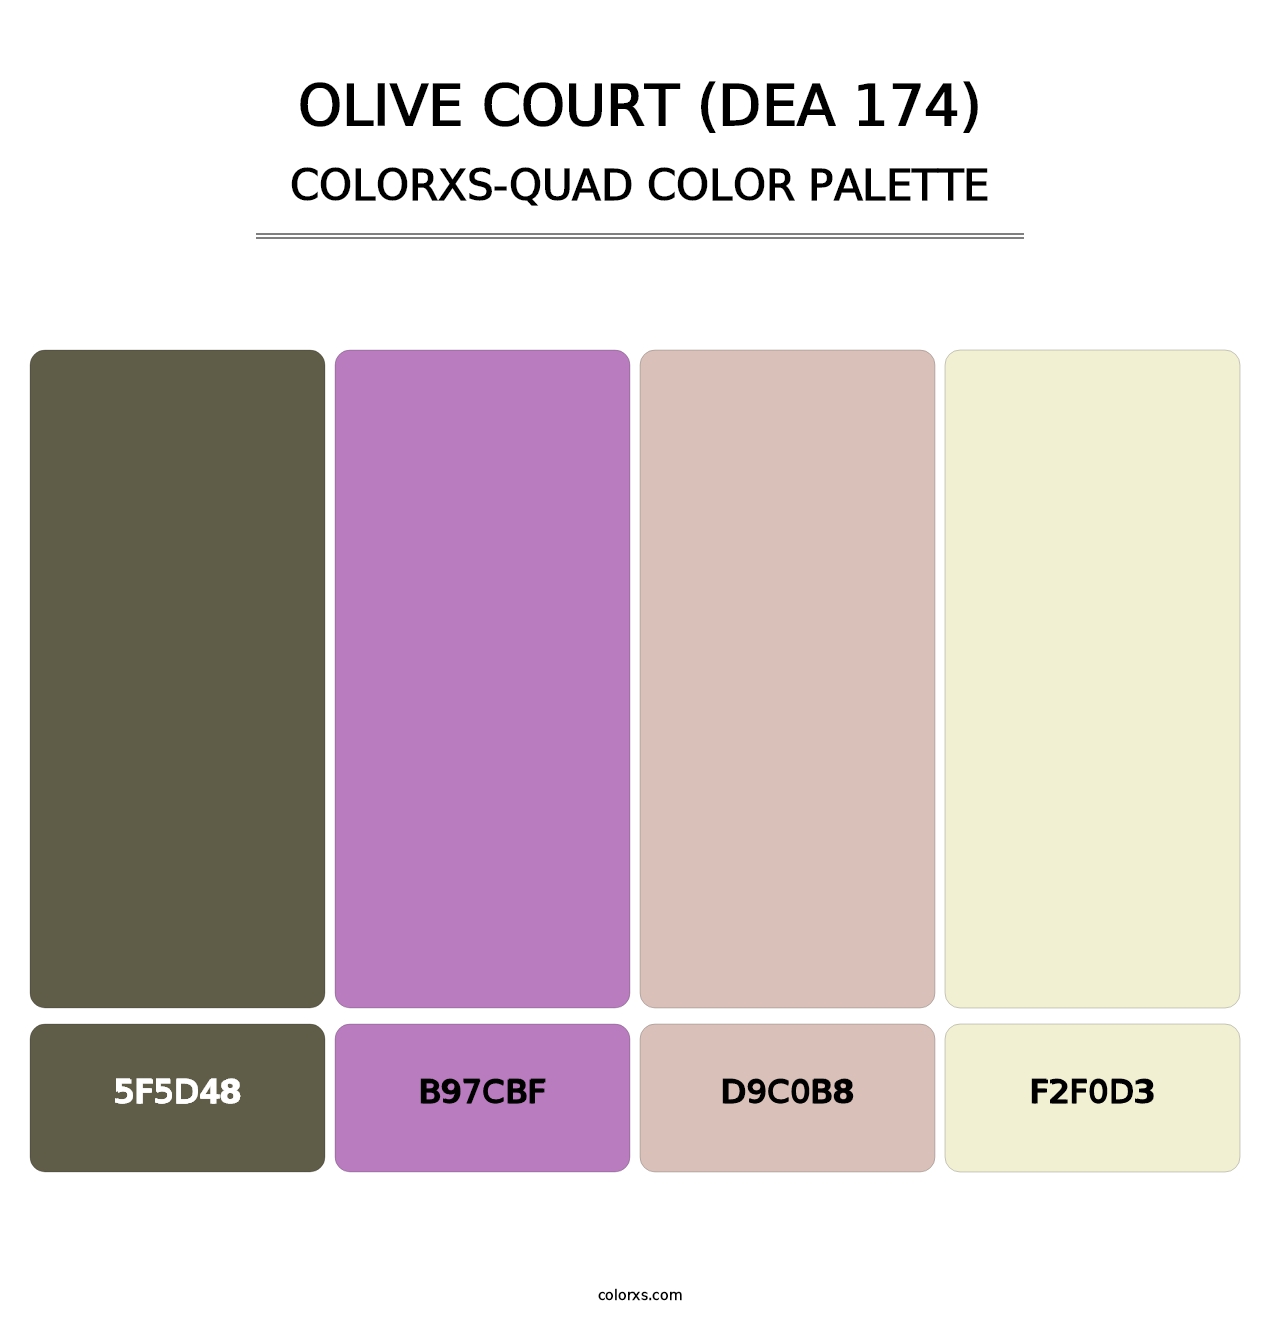 Olive Court (DEA 174) - Colorxs Quad Palette